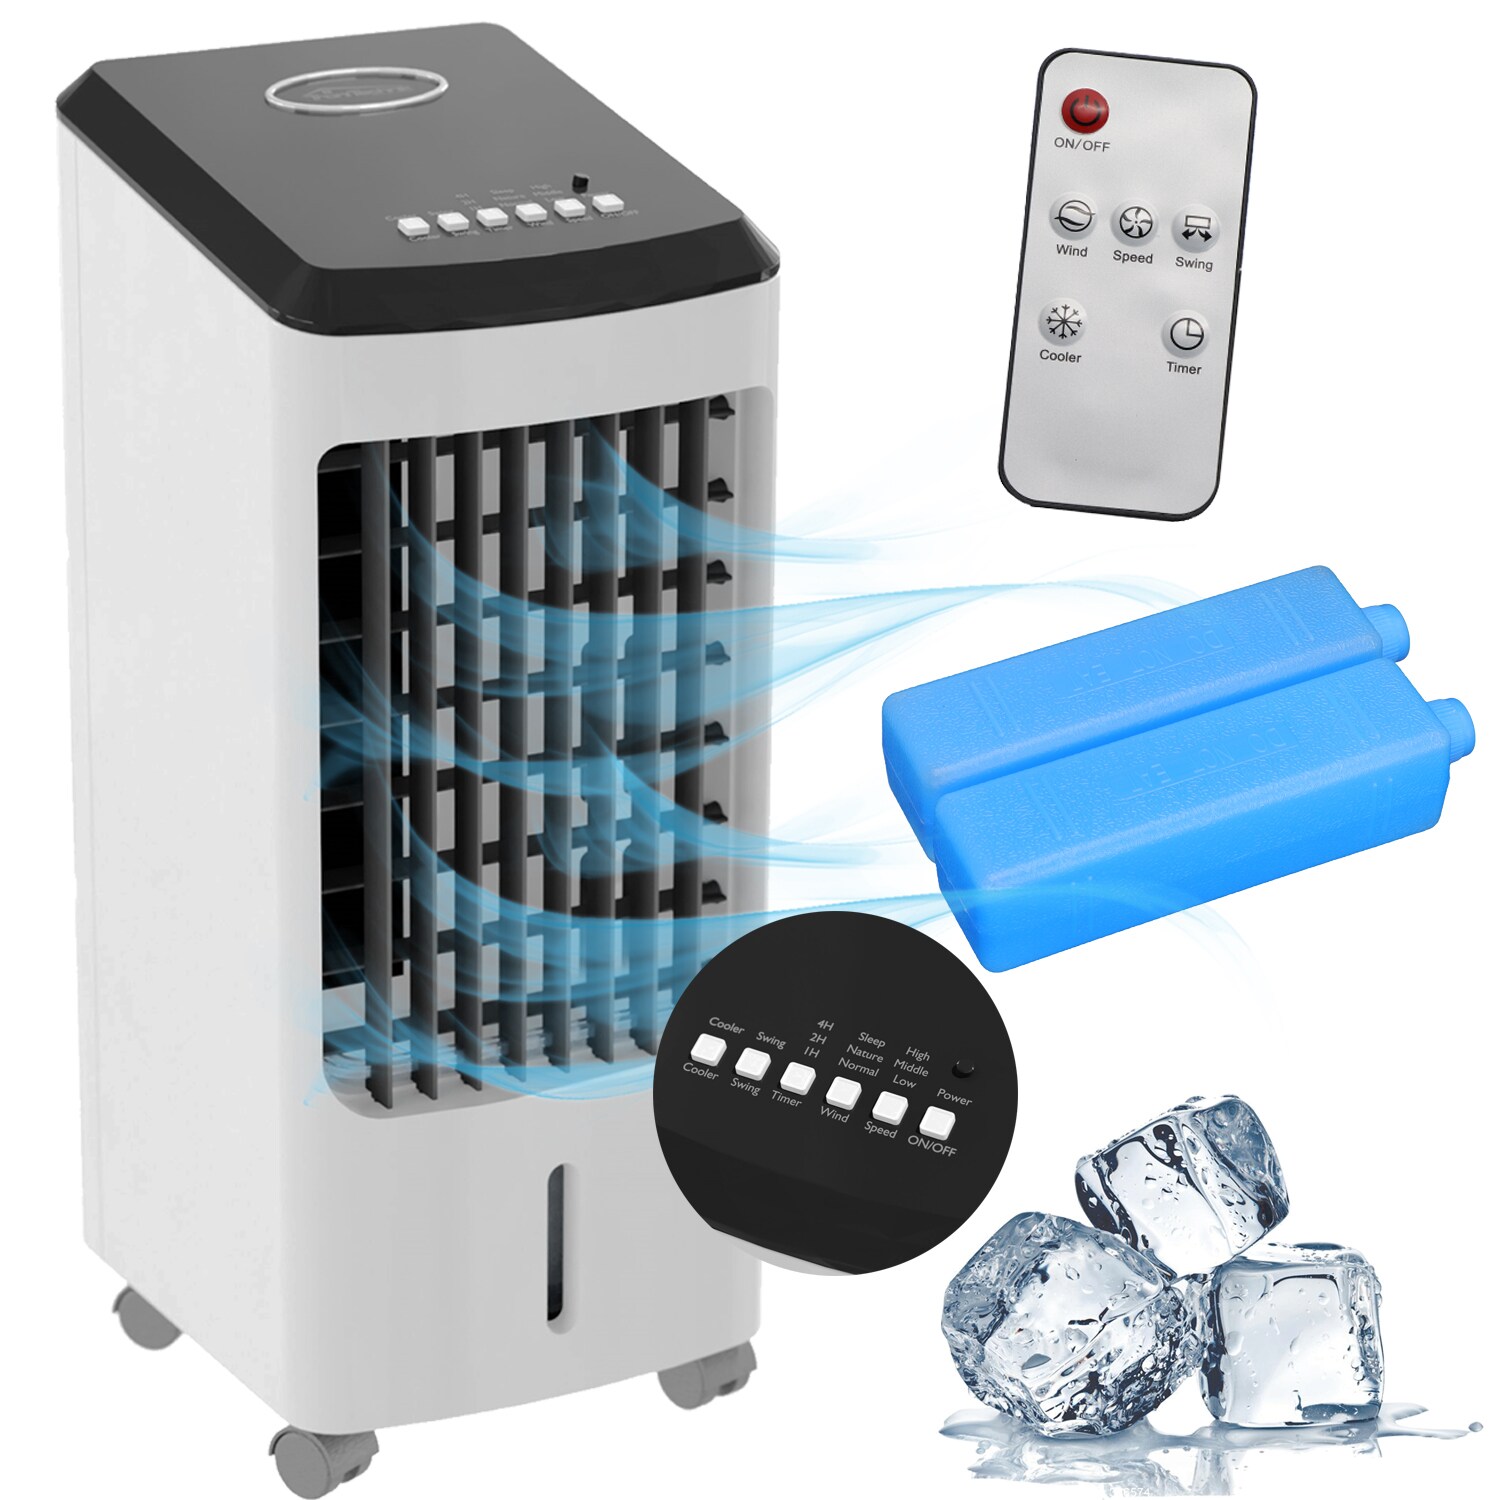 TroniTechnik® Mobiles Klimagerät 4in1 Klimaanlage Luftkühler LK03 Ventilator, inkl. Fernbedienung, Filter, 3in1 Air Cool